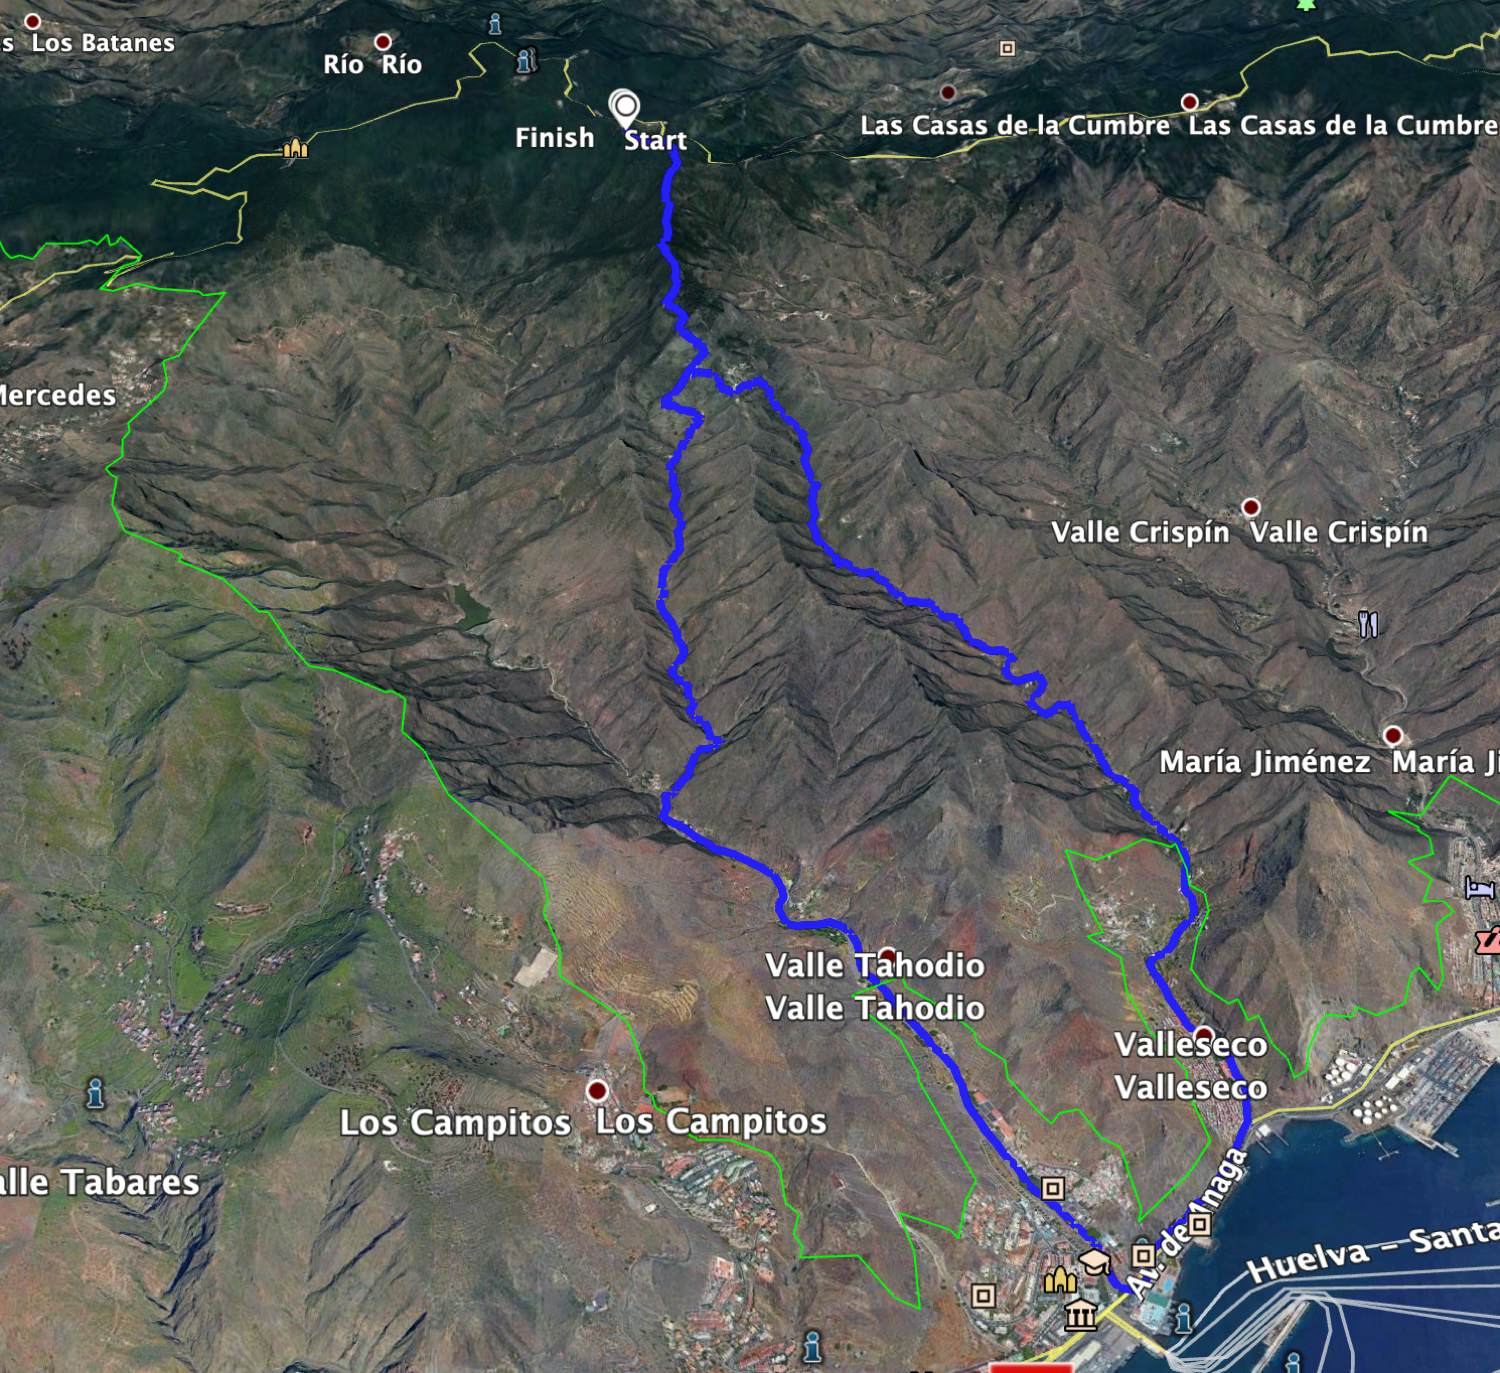 Track of the hike Pico del Ingles - Santa Cruz de Tenerife